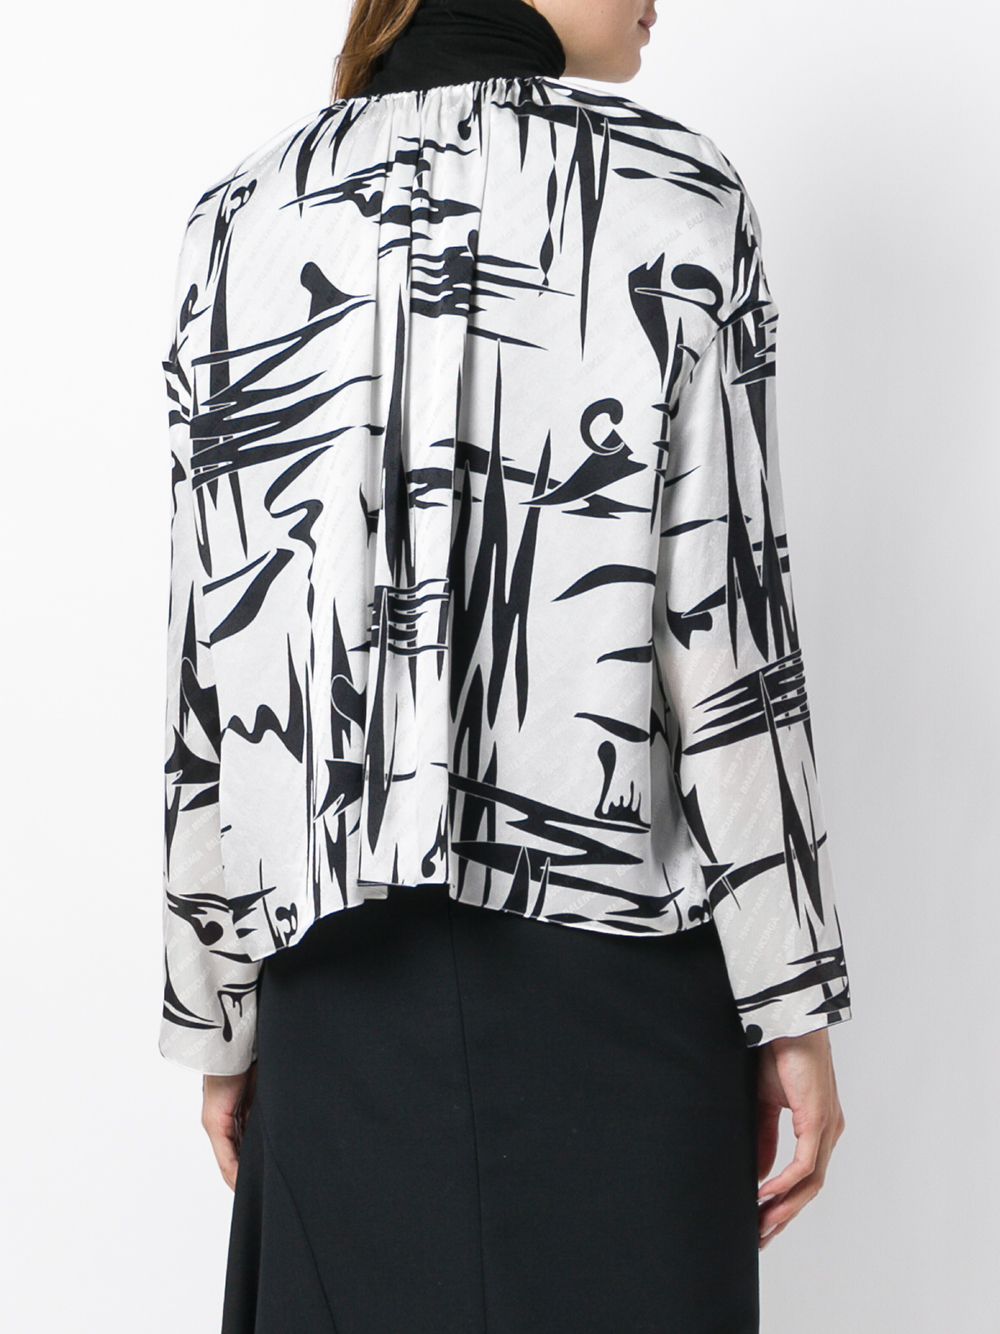 фото Balenciaga блузка с графическим принтом